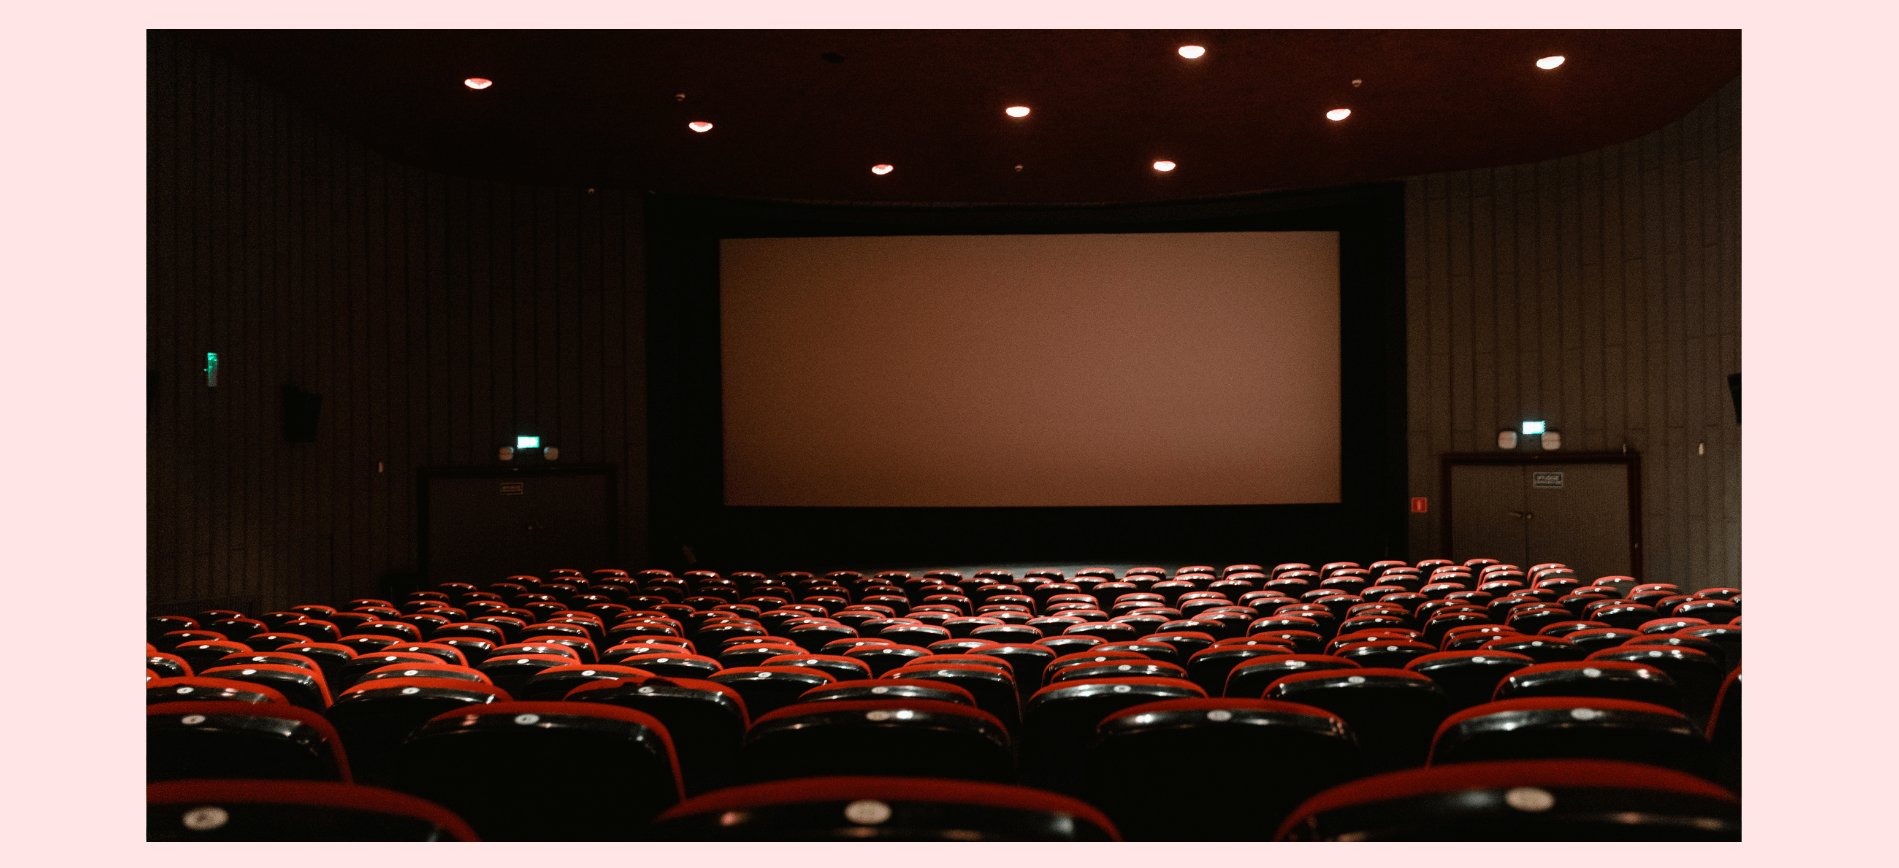 Tela de cinema em destaque em uma sala de cinema vazia